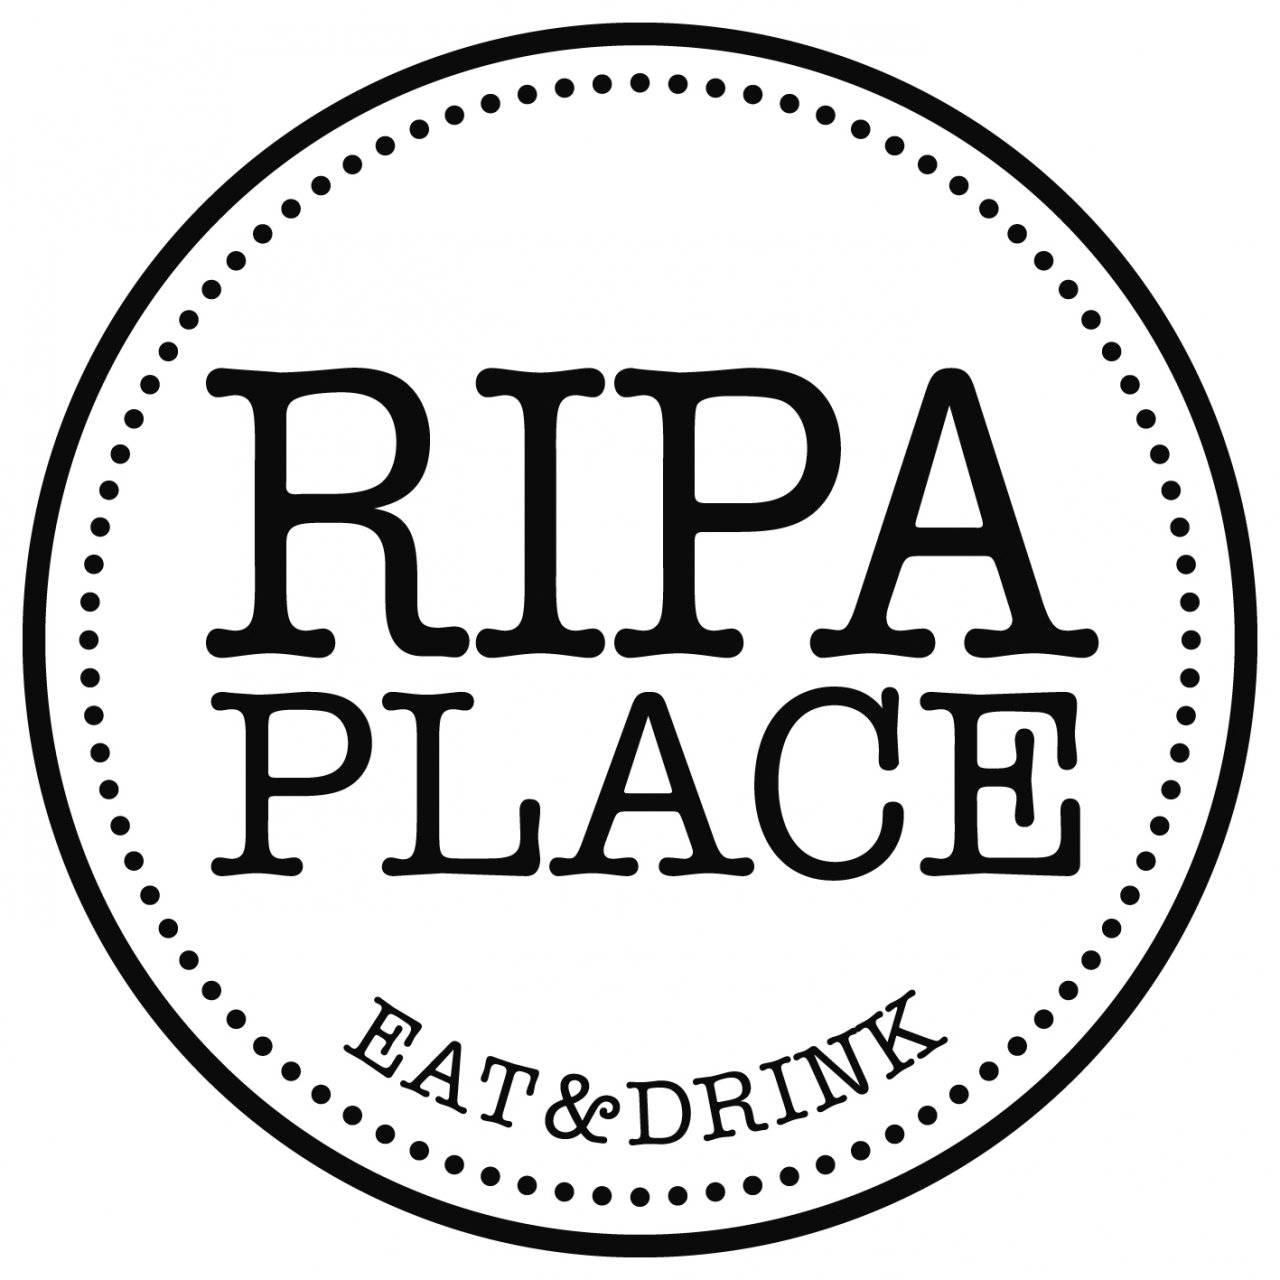 Ripa Place